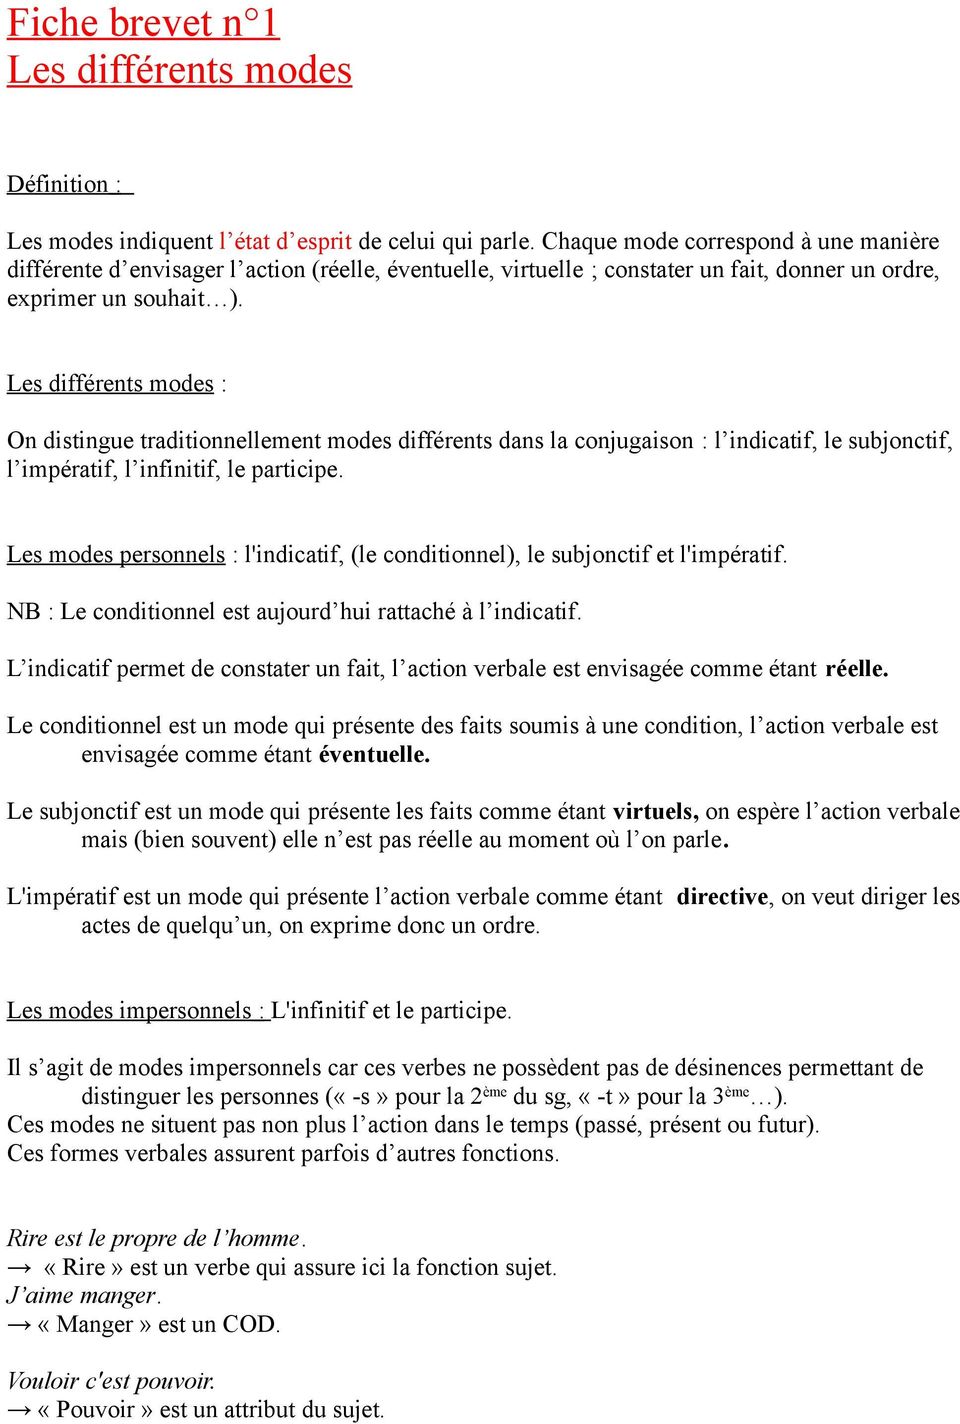 Fiche De Révision Français Brevet Pdf Fiche brevet n 1 Les différents modes - PDF Free Download